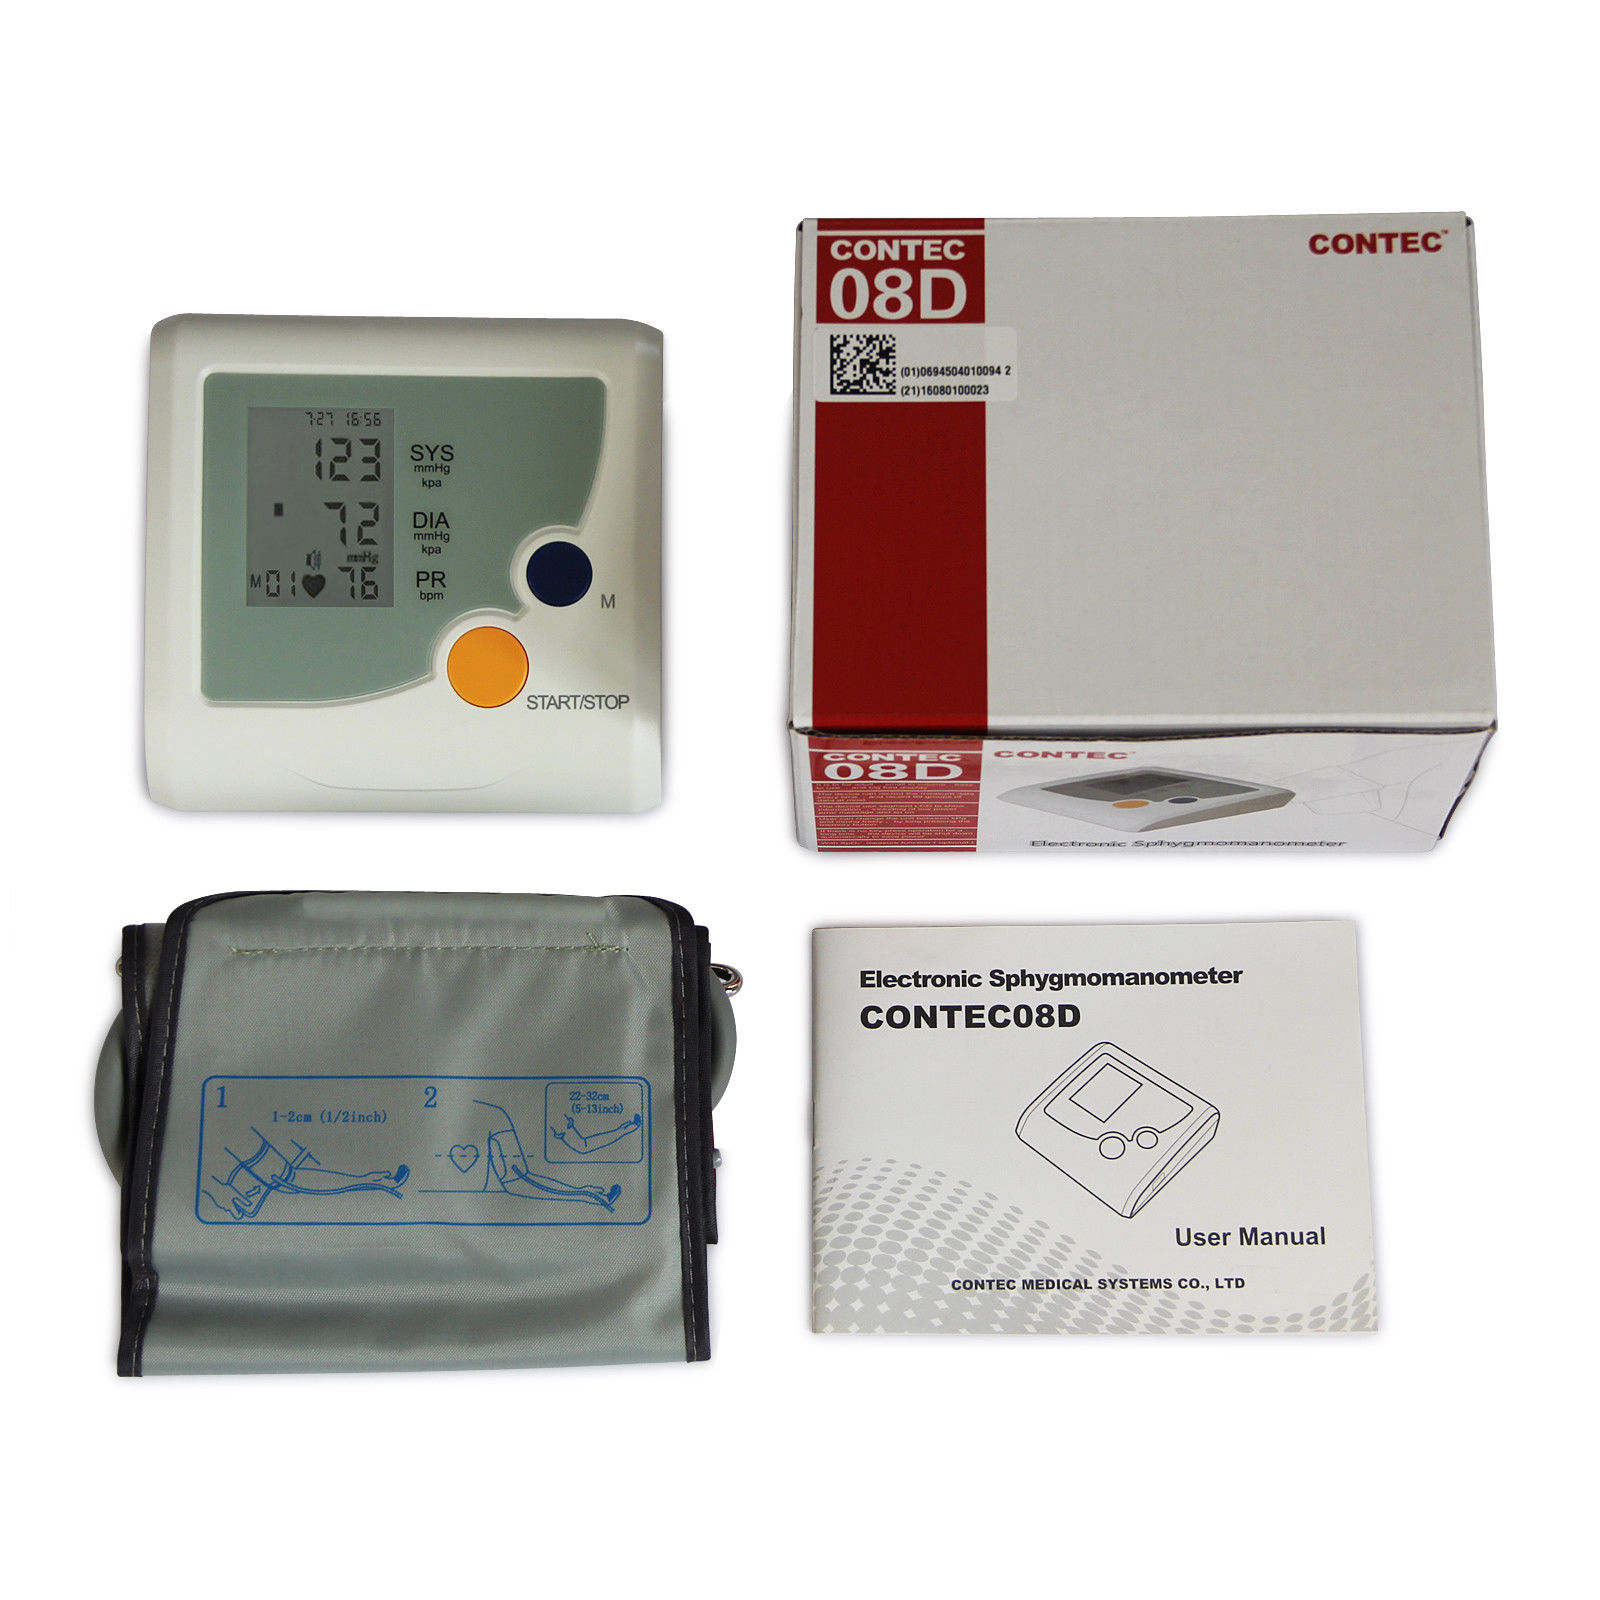 CL-CONTEC08D elektronisk blodtryksmåler digital til hjemmet og klinikken